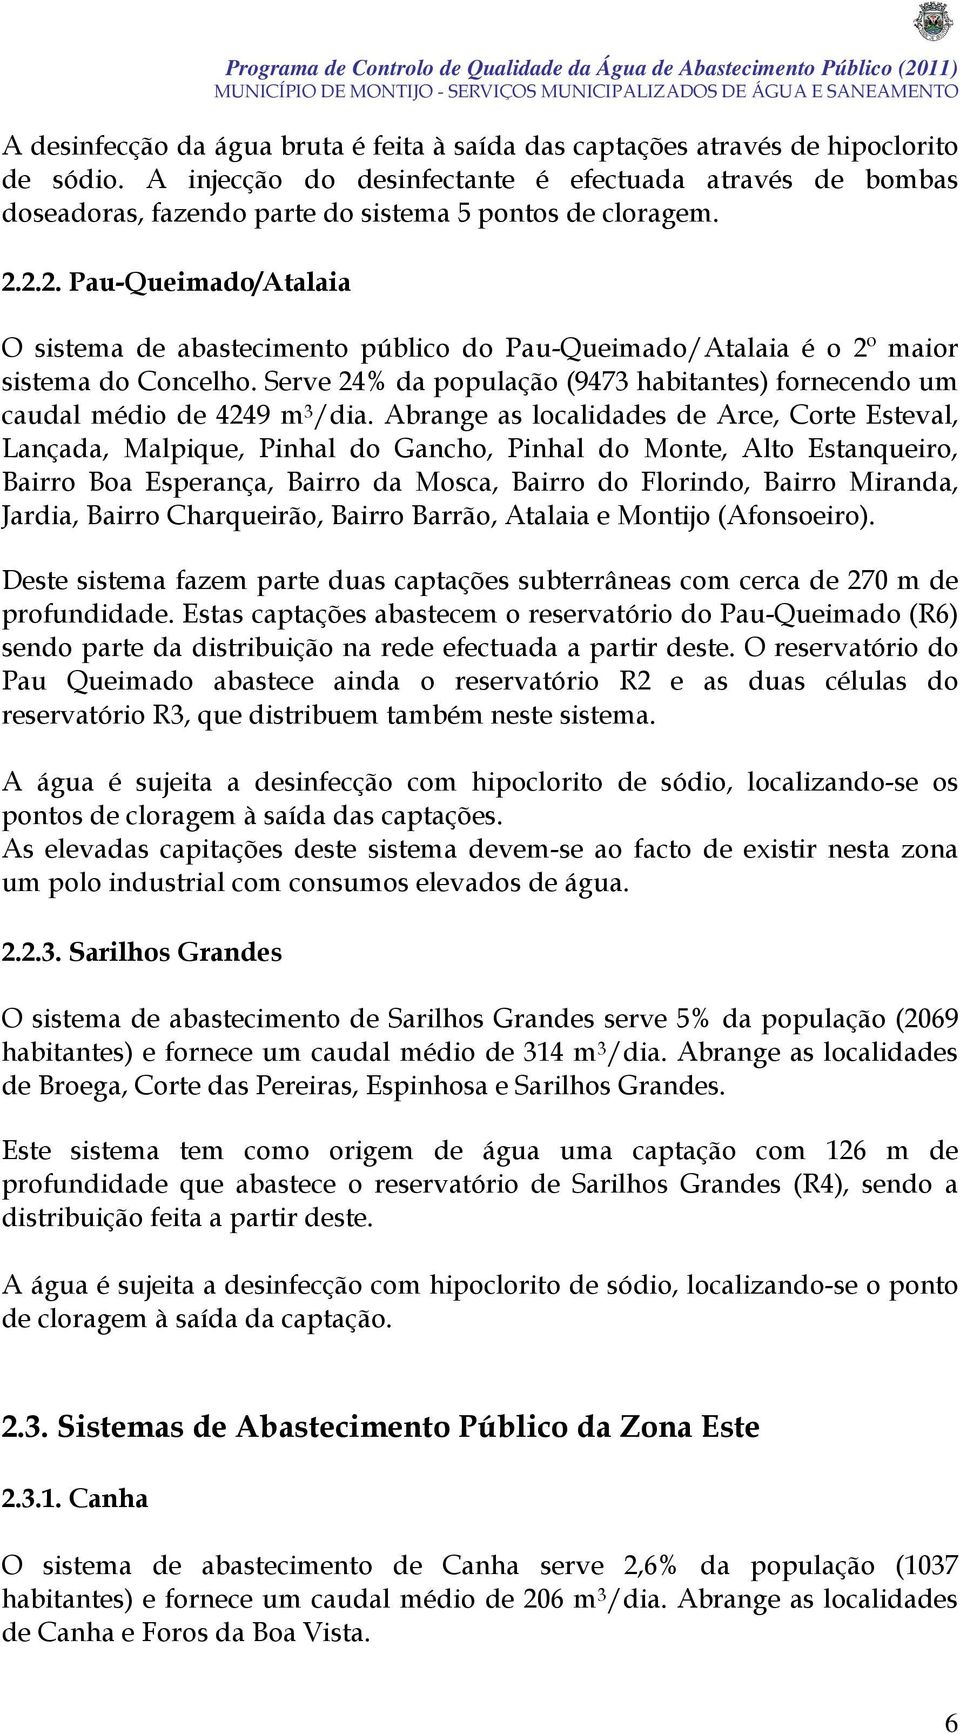 2.2. Pau-Queimado/Atalaia O sistema de abastecimento público do Pau-Queimado/Atalaia é o 2º maior sistema do Concelho.